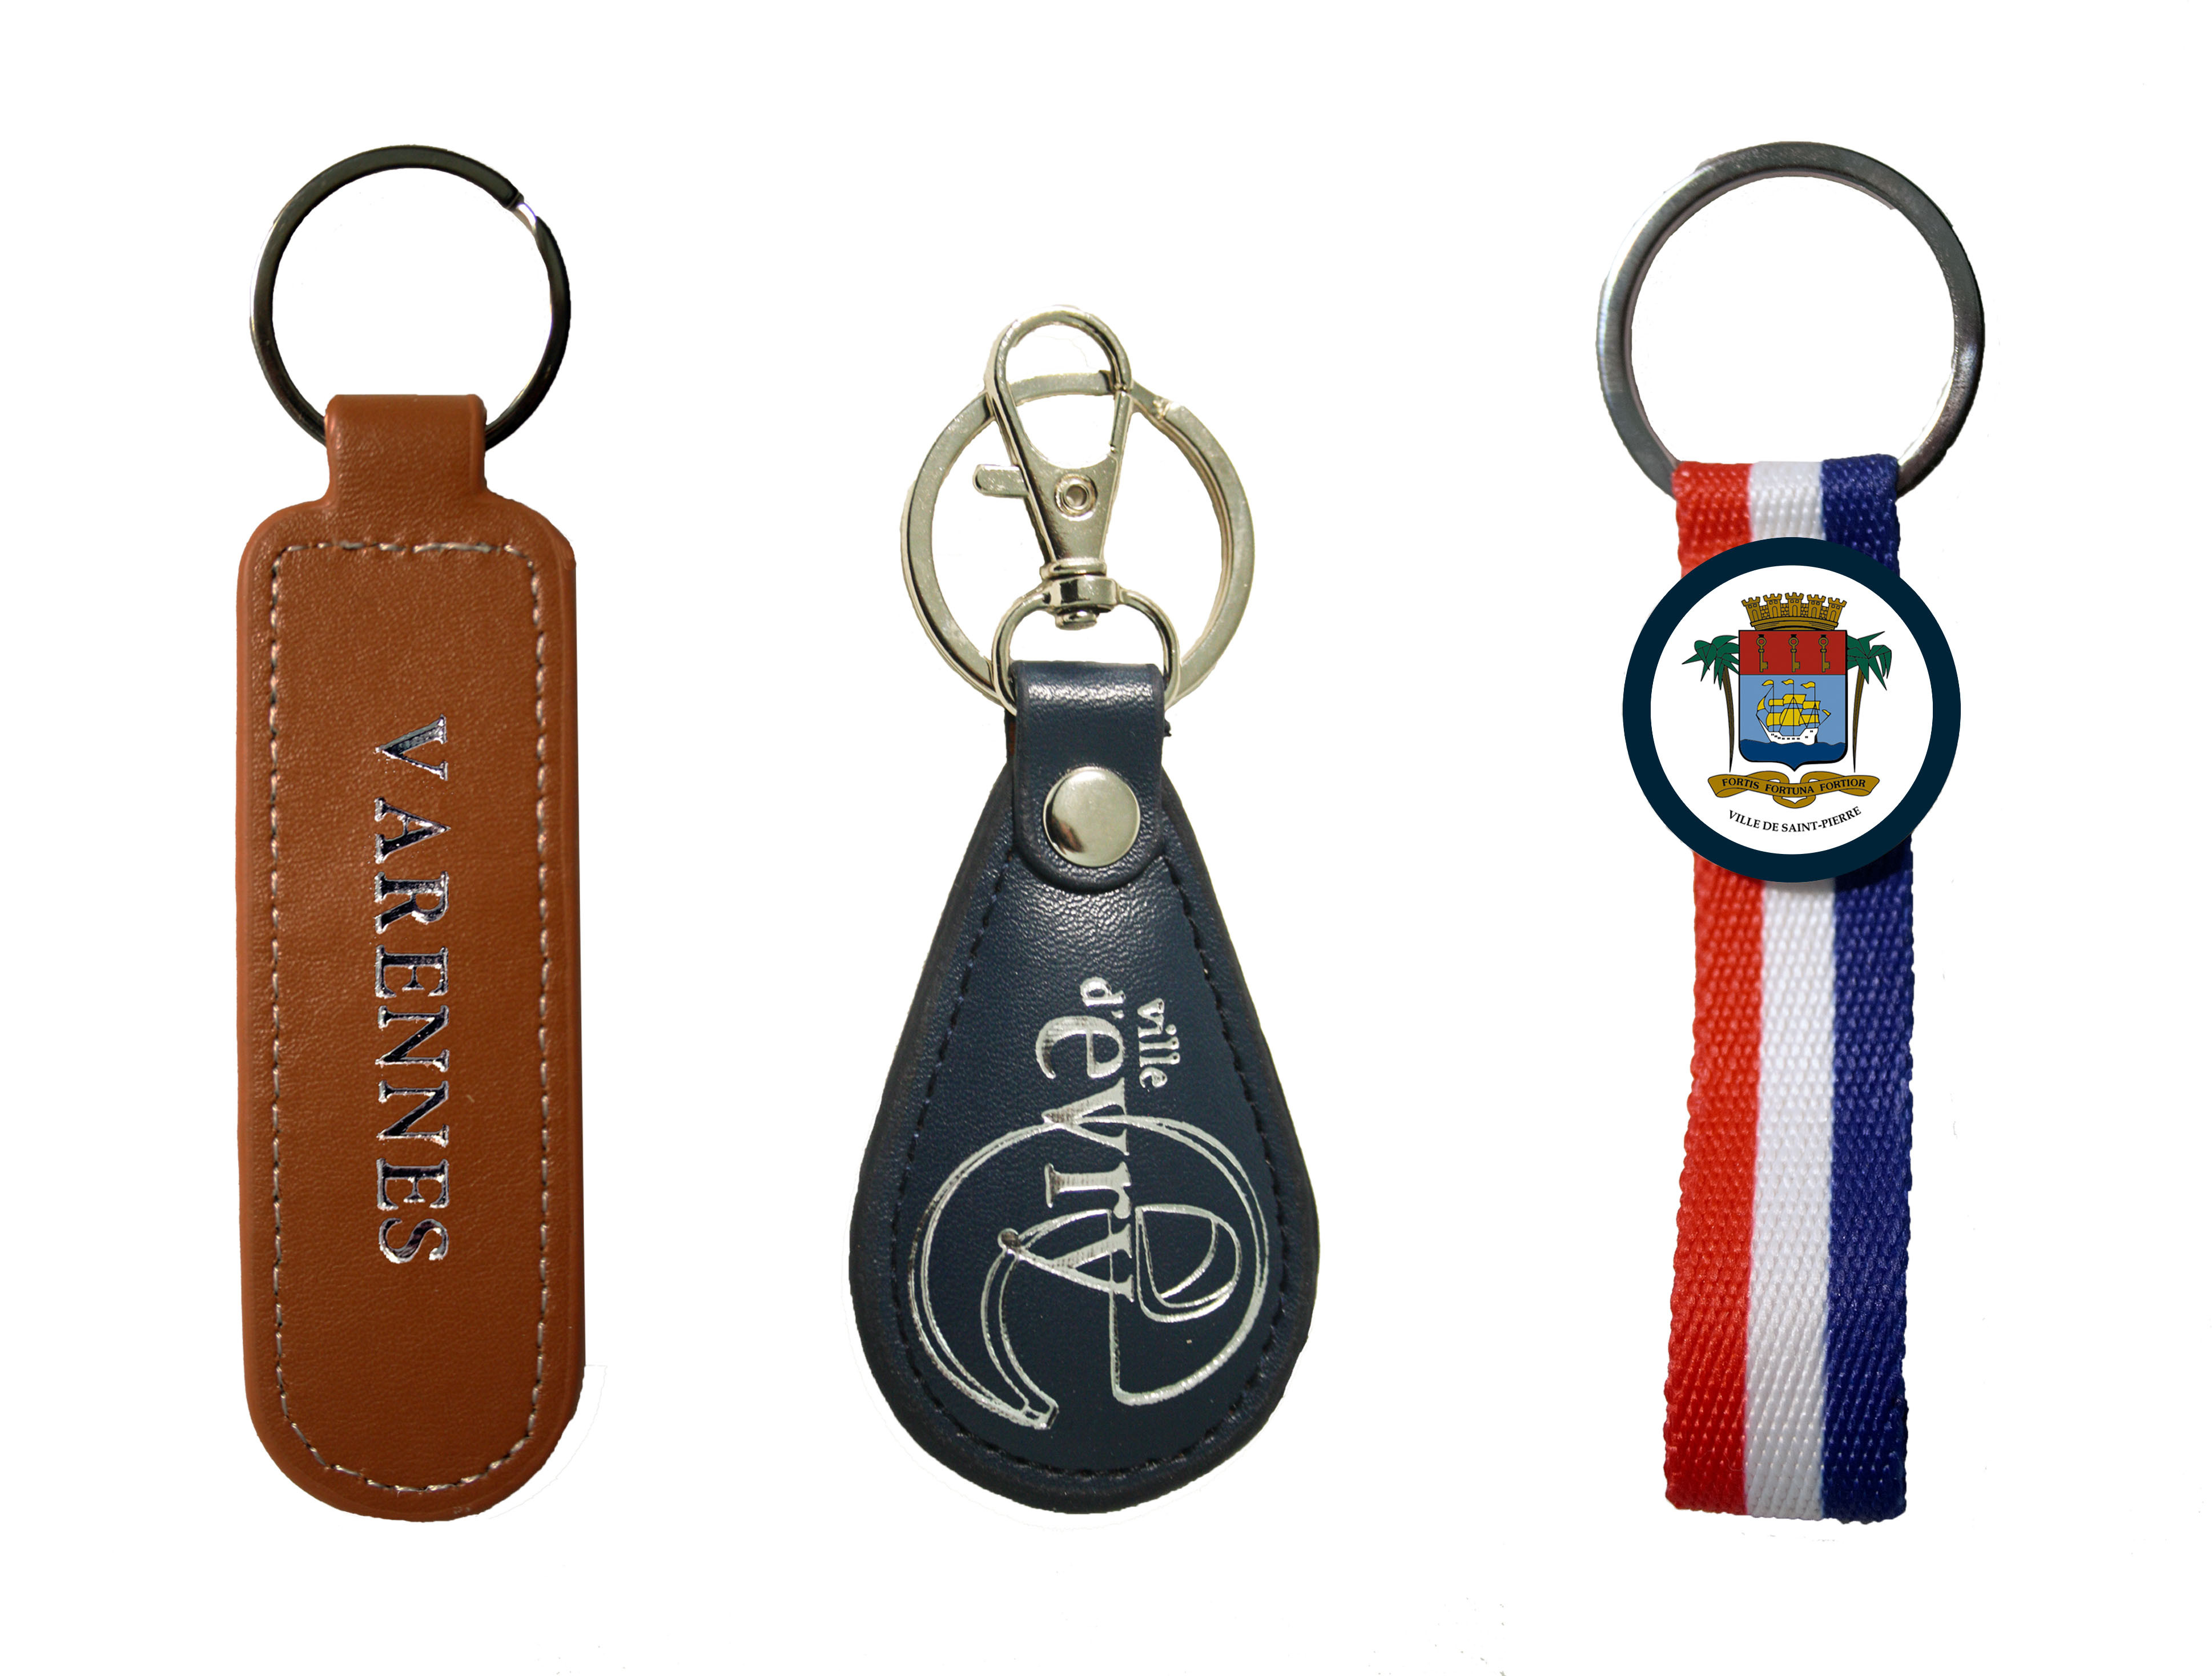 Porte-clés simili-cuir ou en tissu tressé